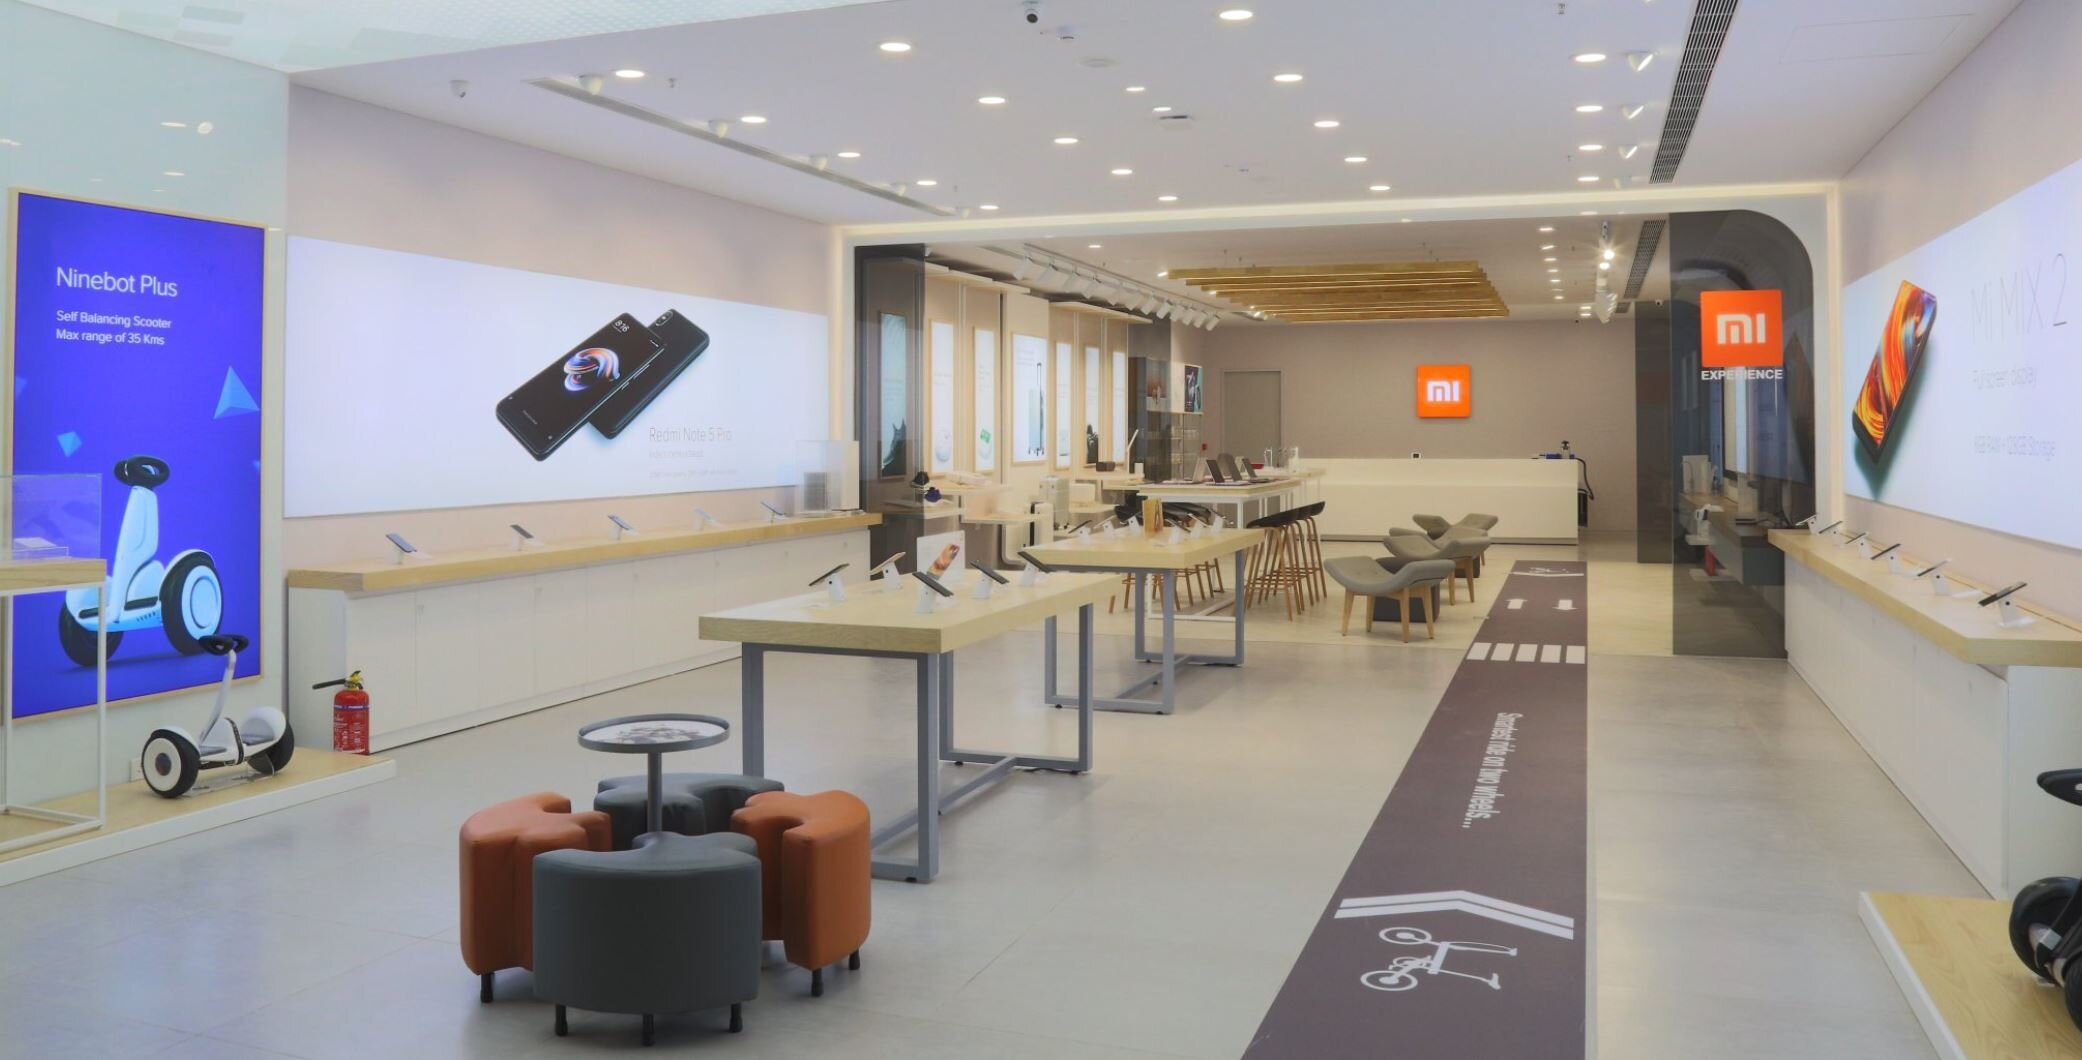 Η Xiaomi ανακοίνωσε έσοδα ρεκόρ για το τρίτο τρίμηνο, παρά τη μείωση στις πωλήσεις κινητών